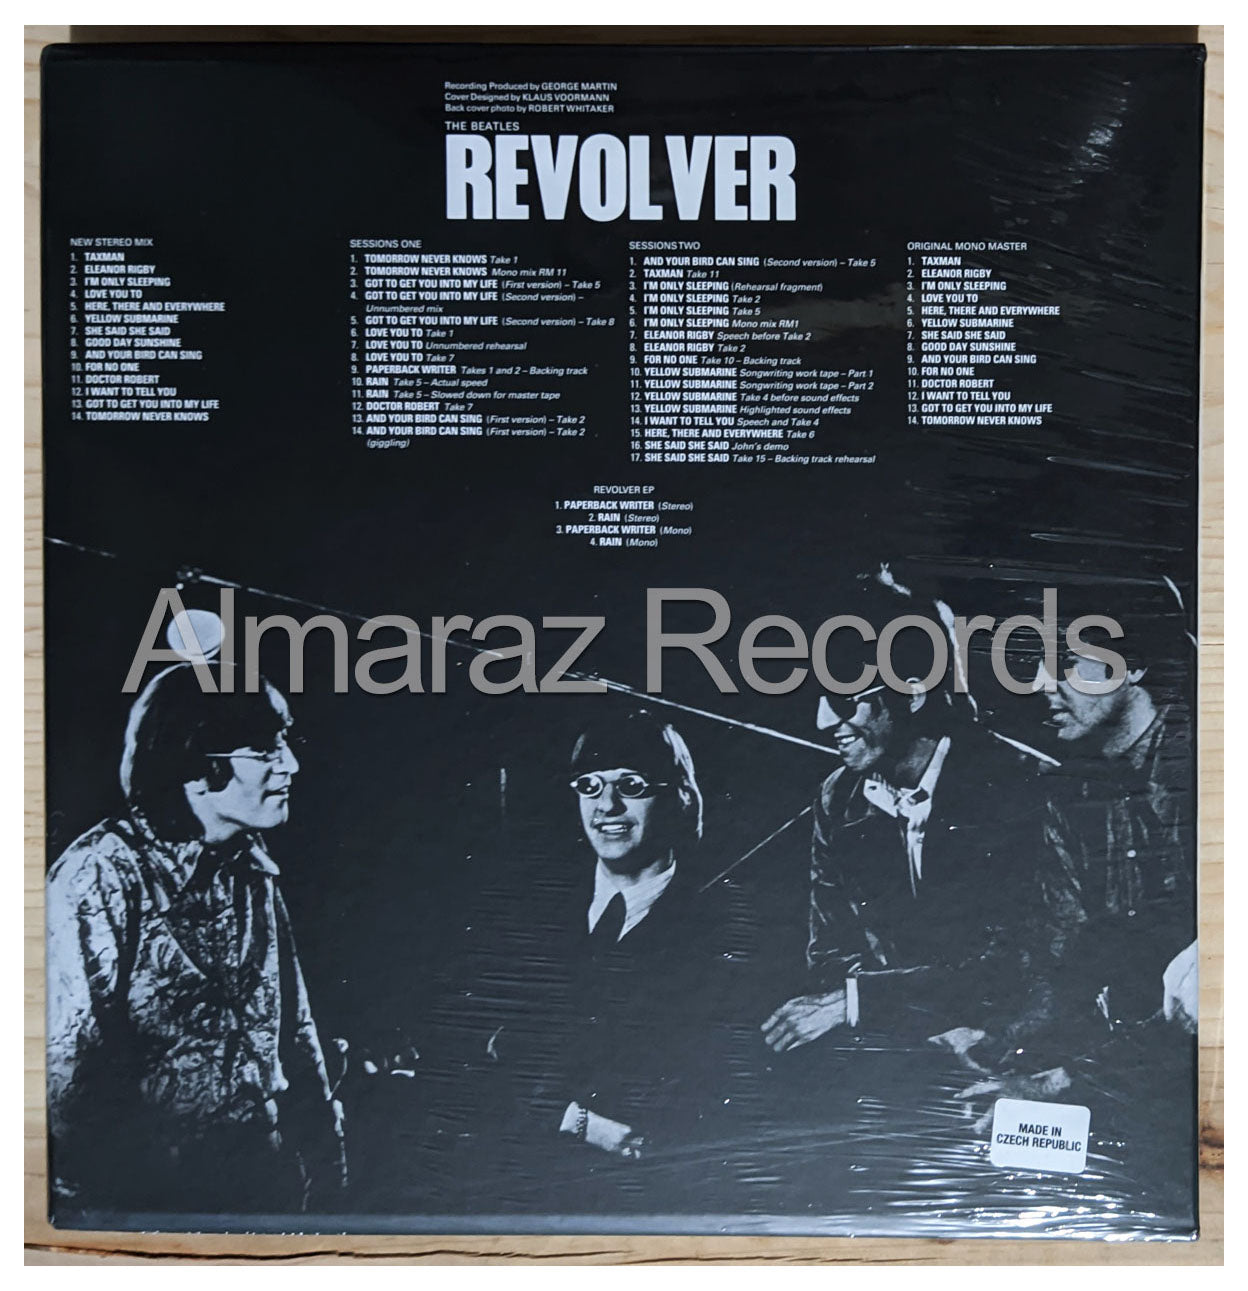 The Beatles Revolver Deluxe CD Boxset [Importado]